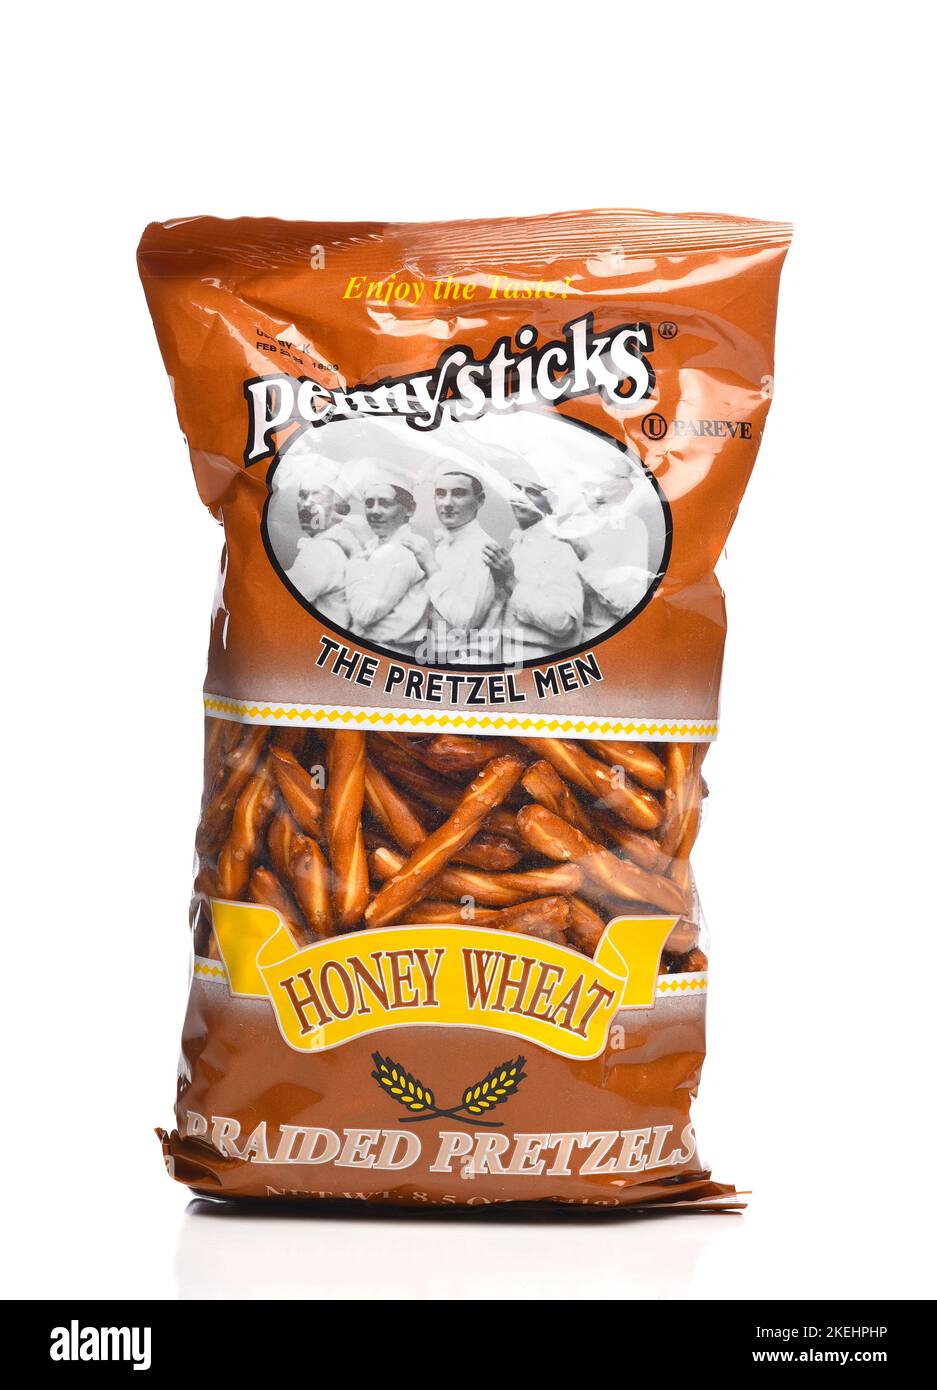 IRIVNE, CALIFORNIA - 12 NOV 2022: A bag of Penny Sticks Honey Wheat Pretzels. Stock Photo